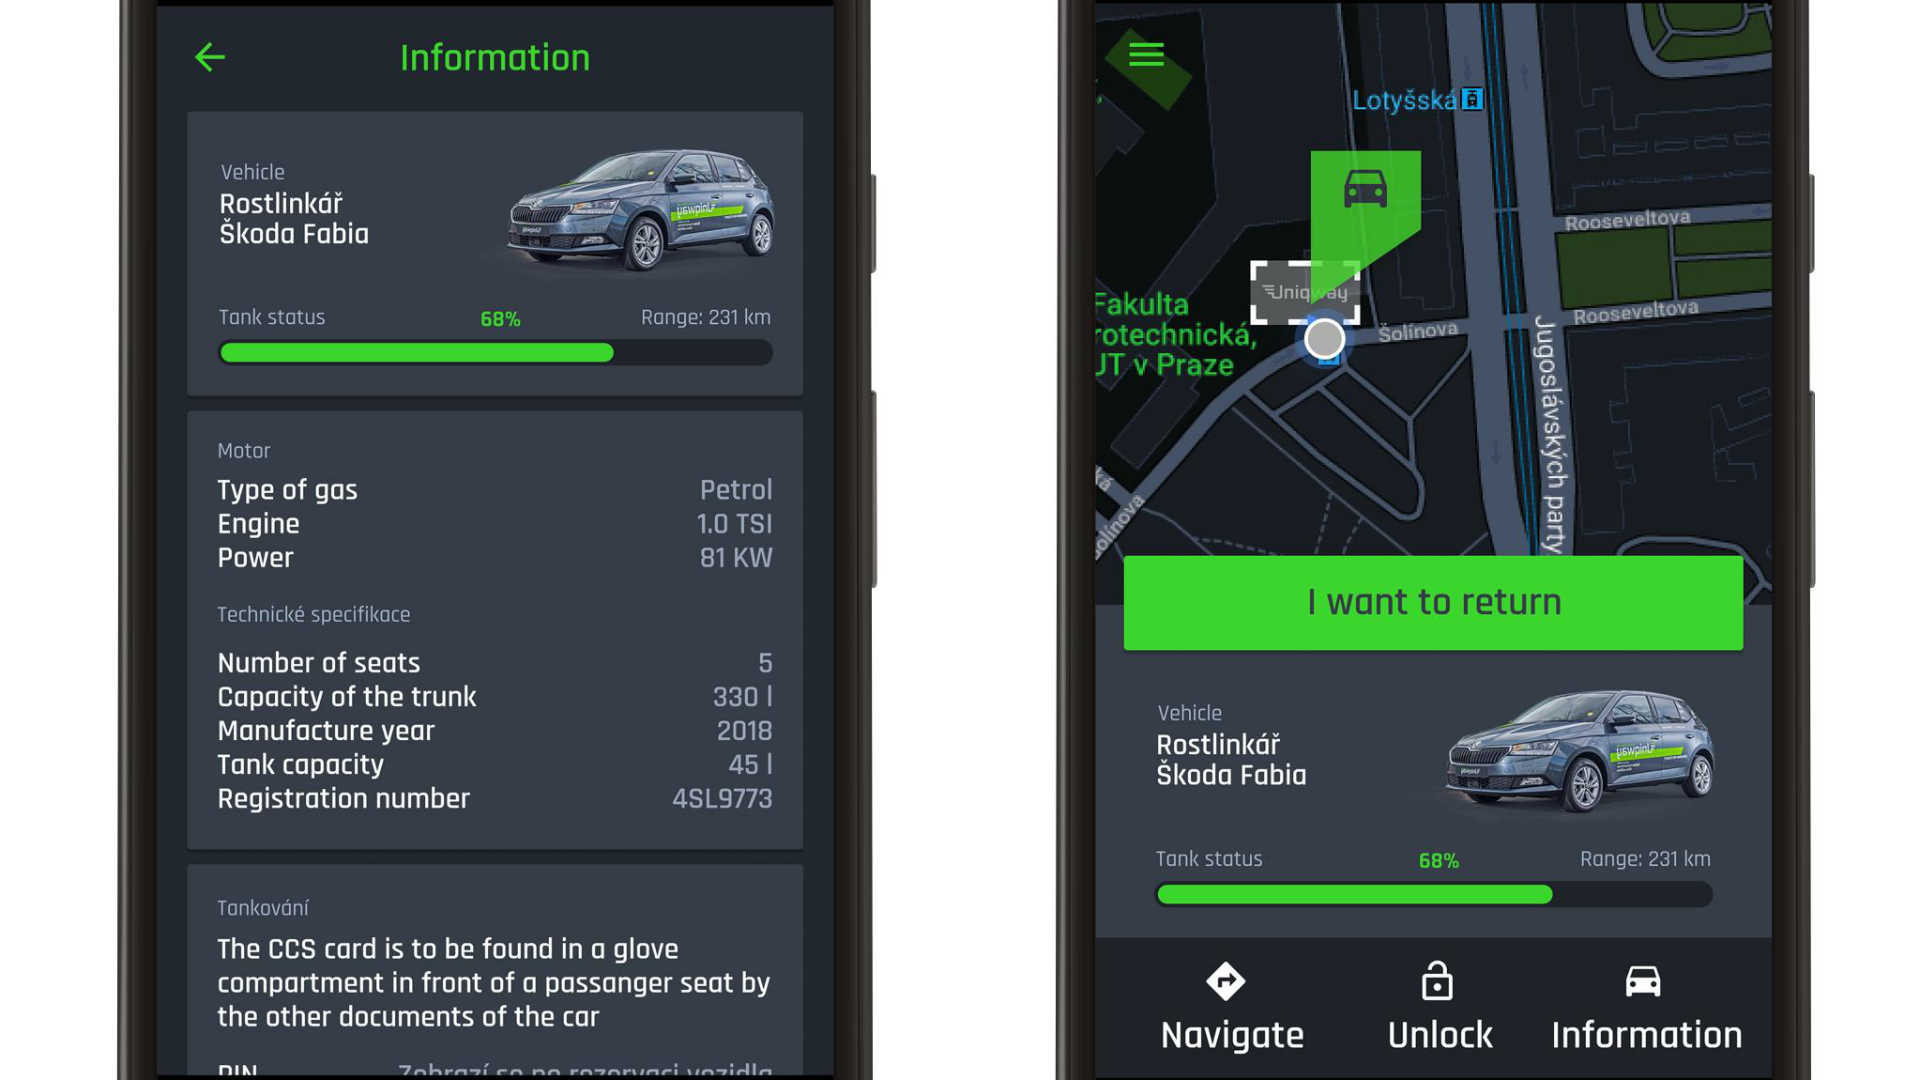 Uniqway car-sharing app